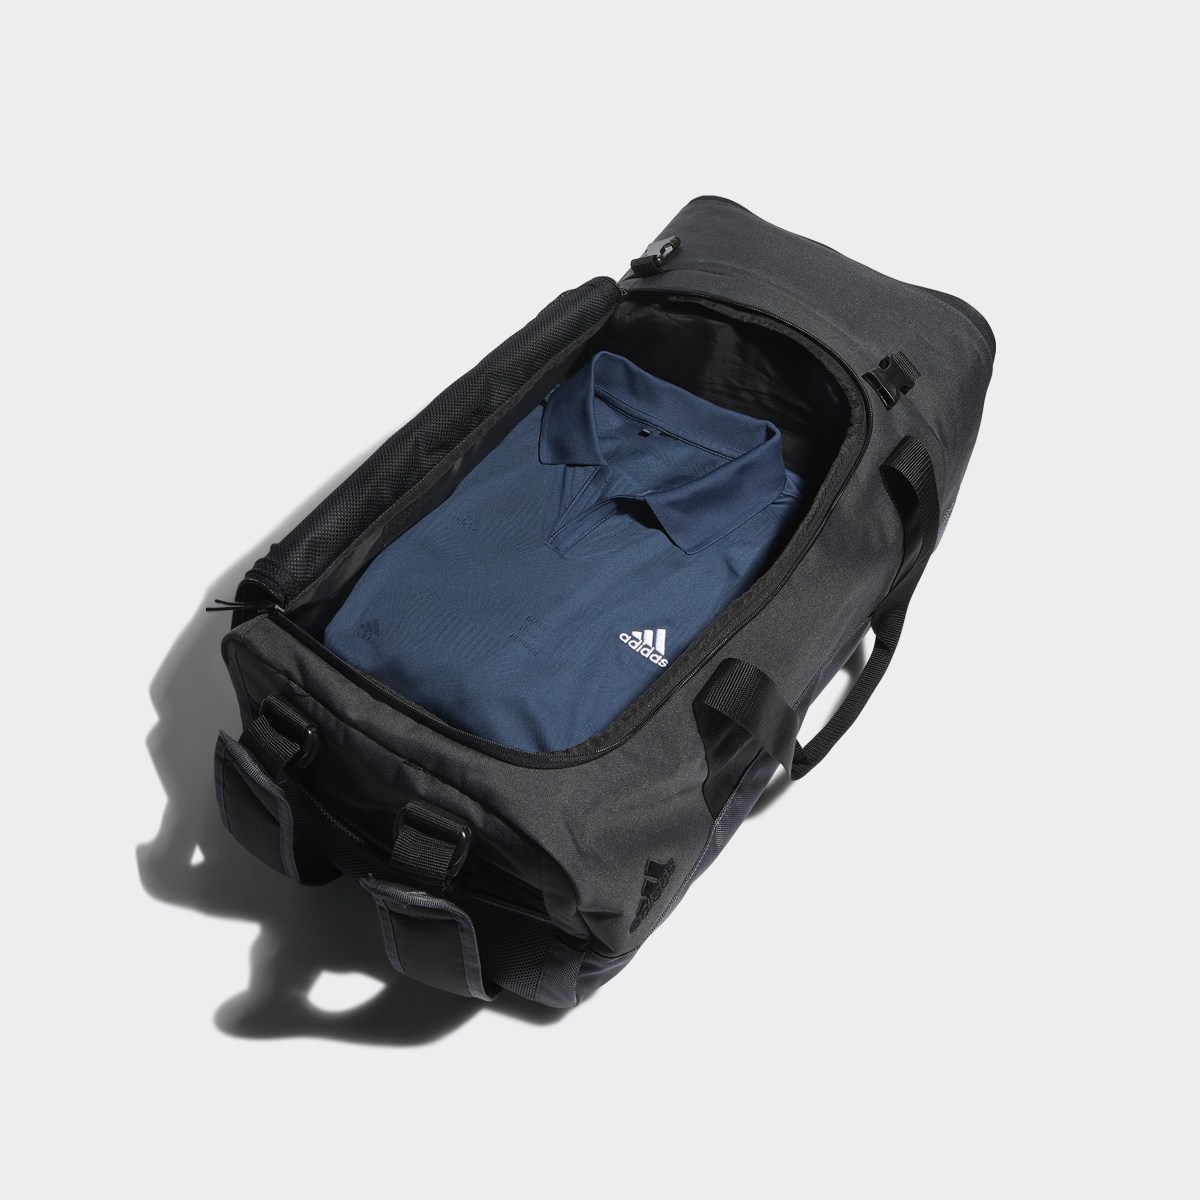 Adidas Golf Duffle Bag. 5